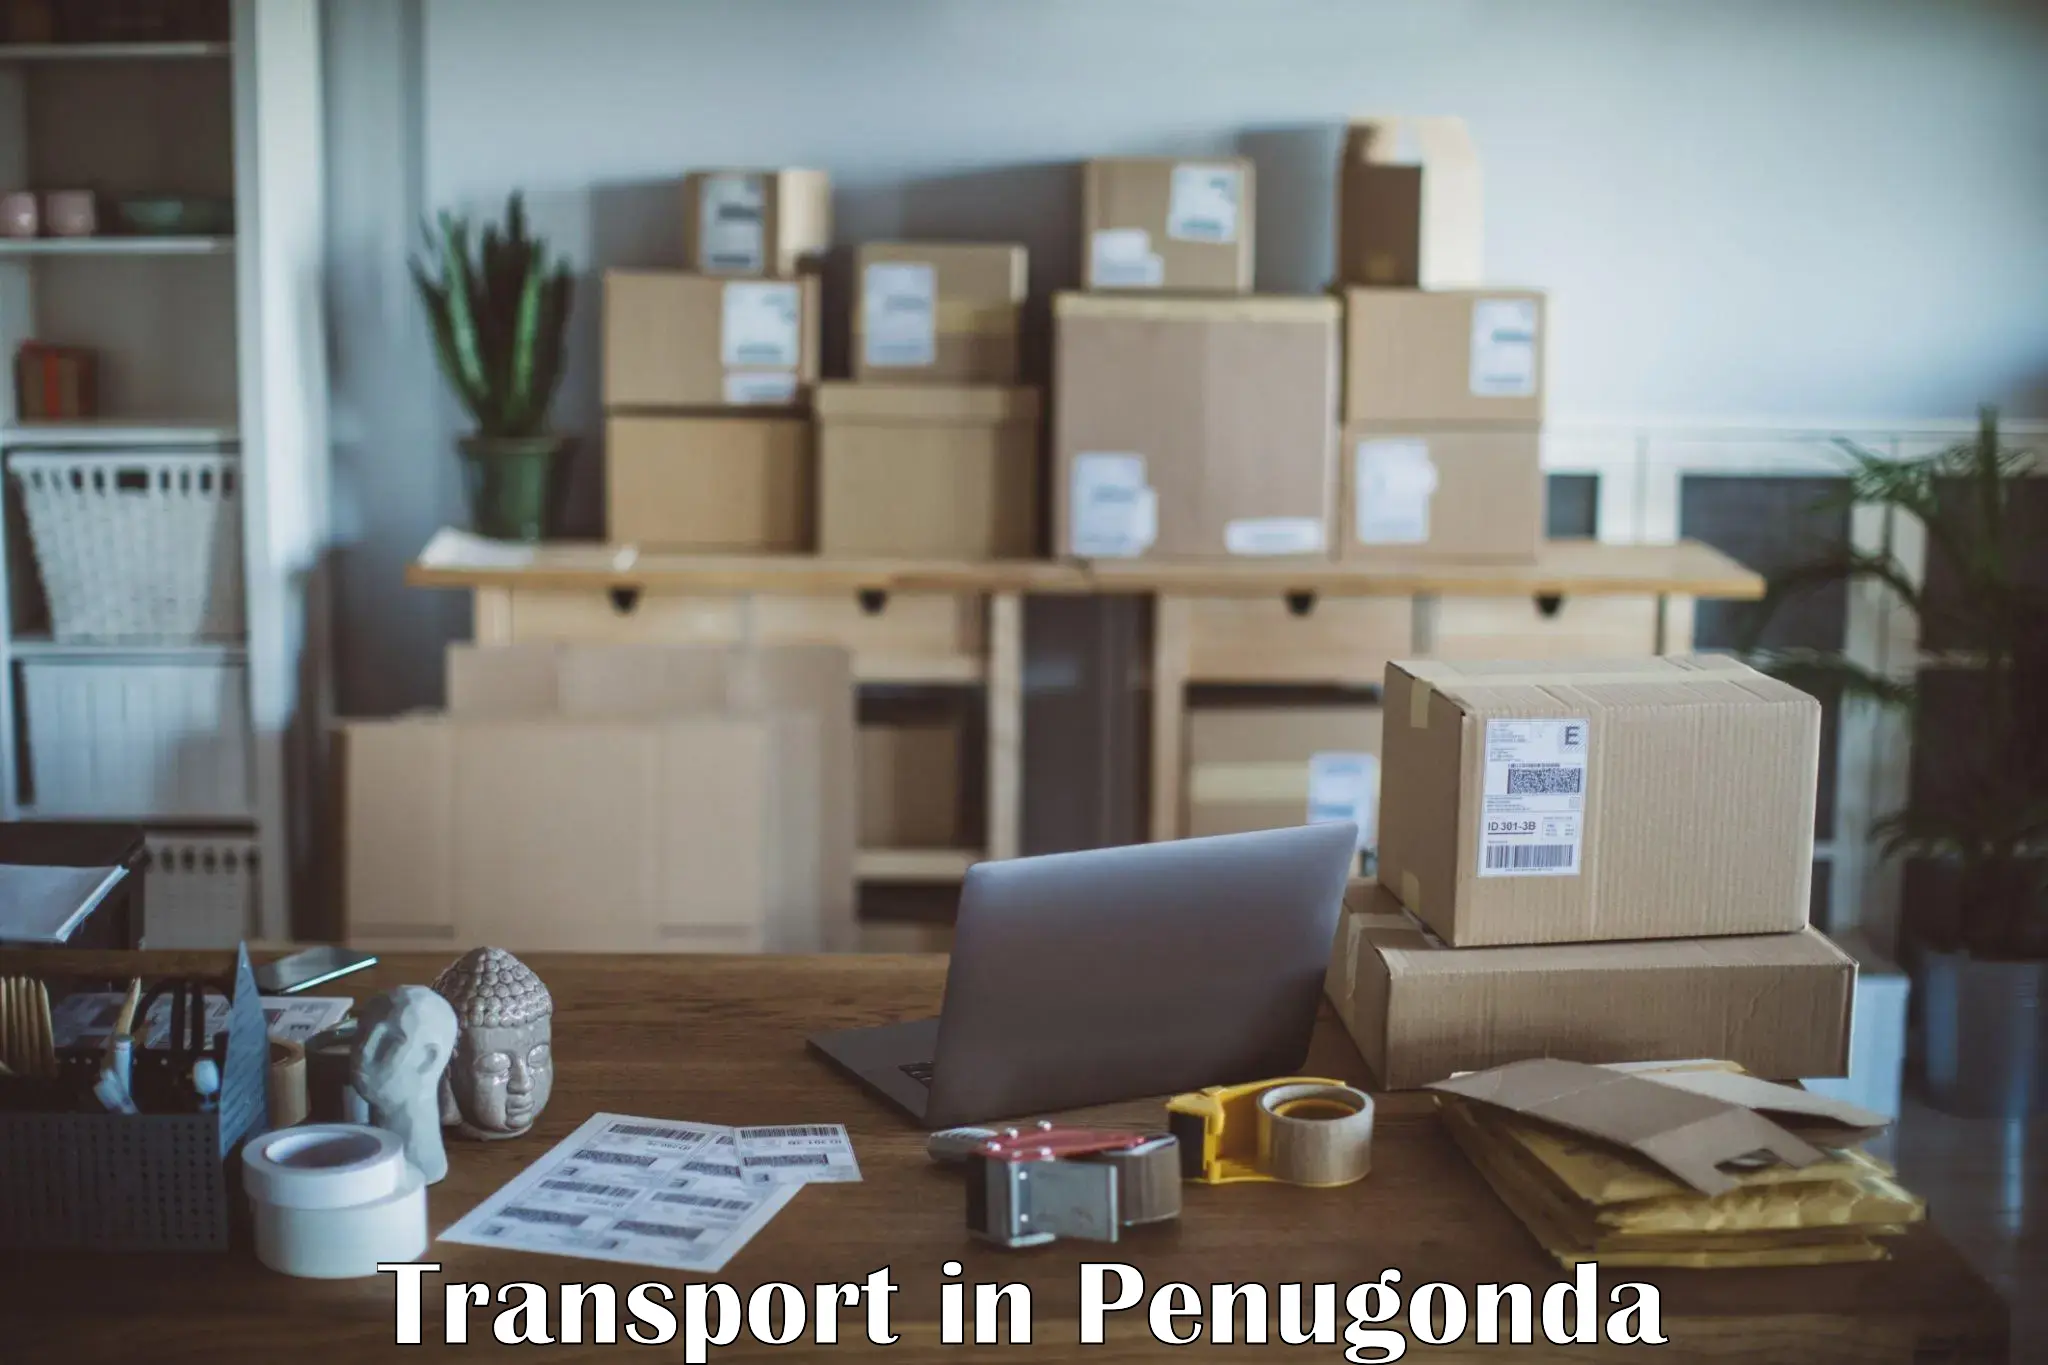 Furniture transport service in Penugonda